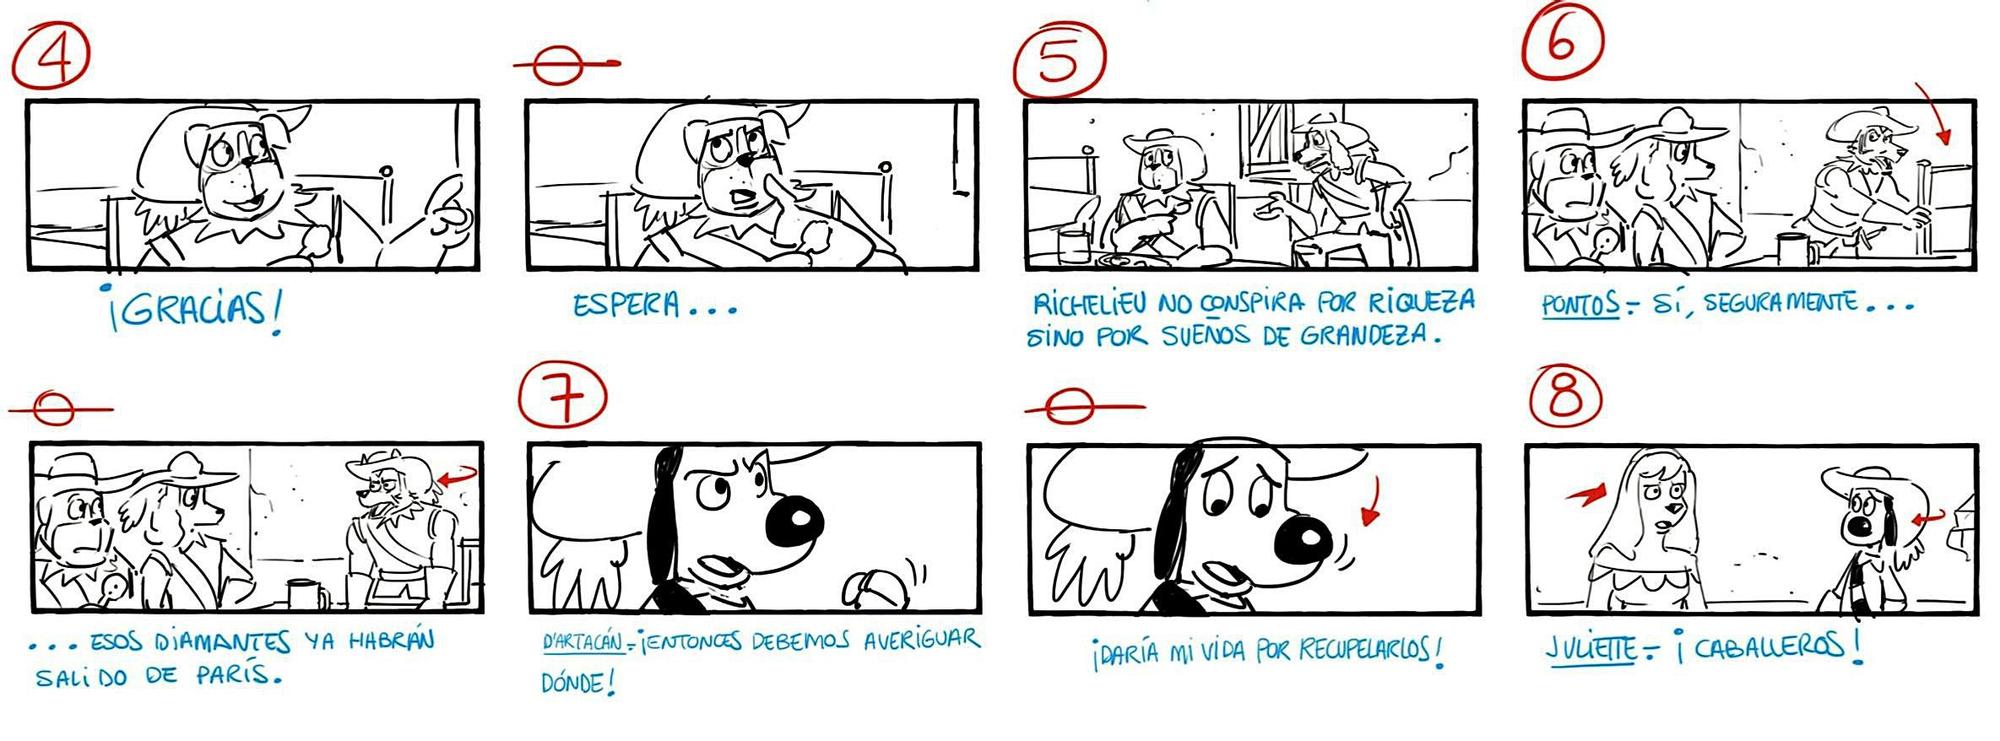 Algunas de las viñetas dibujadas por Paco Sáez en el story sketch, la base del guion gráfico.